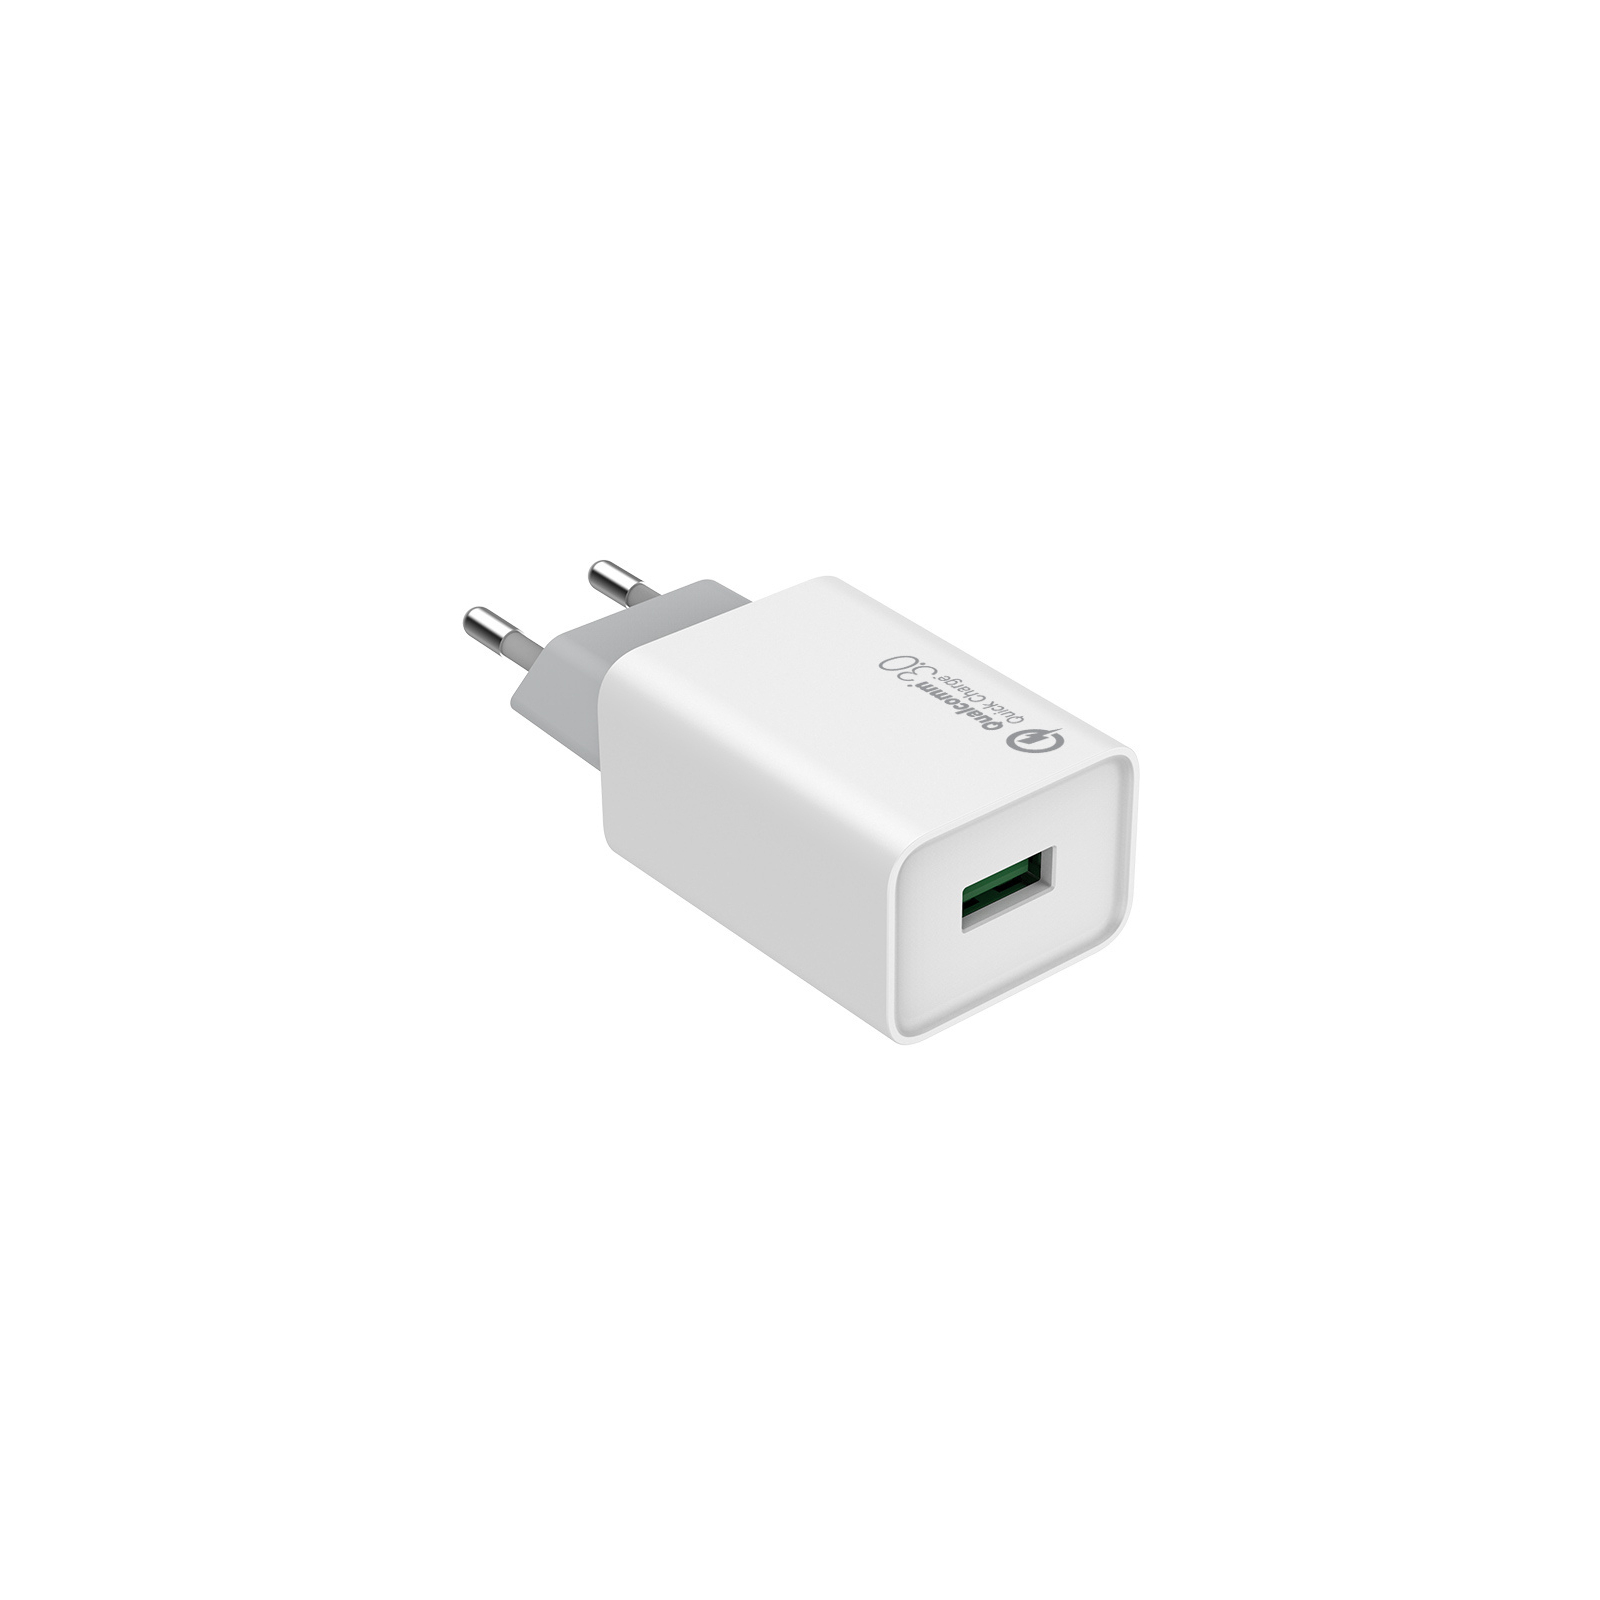 Зарядное устройство ColorWay 1USB Quick Charge 3.0 (18W) (CW-CHS013Q-WT) изображение 2